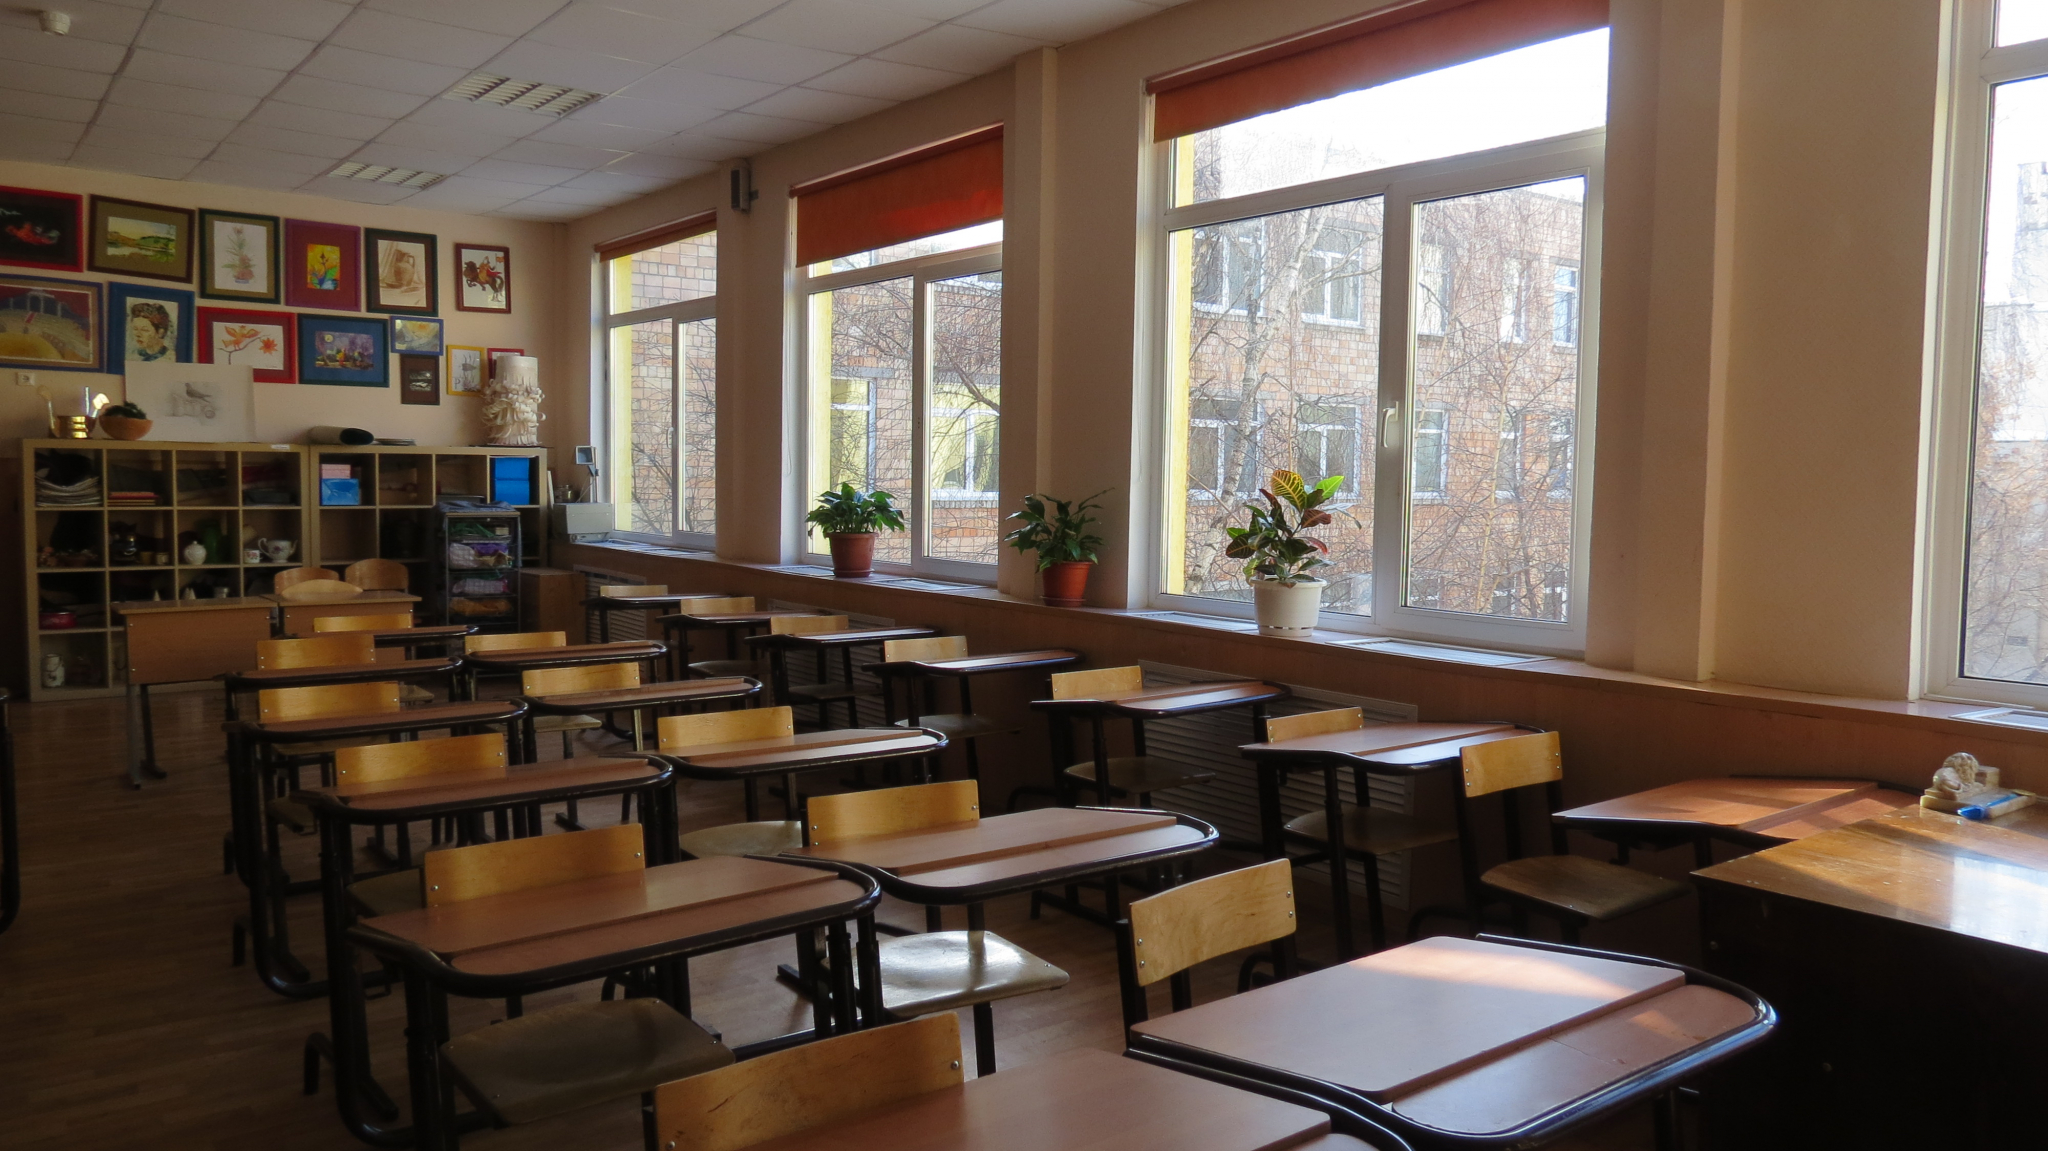 Четыре опасные школы выявлены в Лукояновском районе